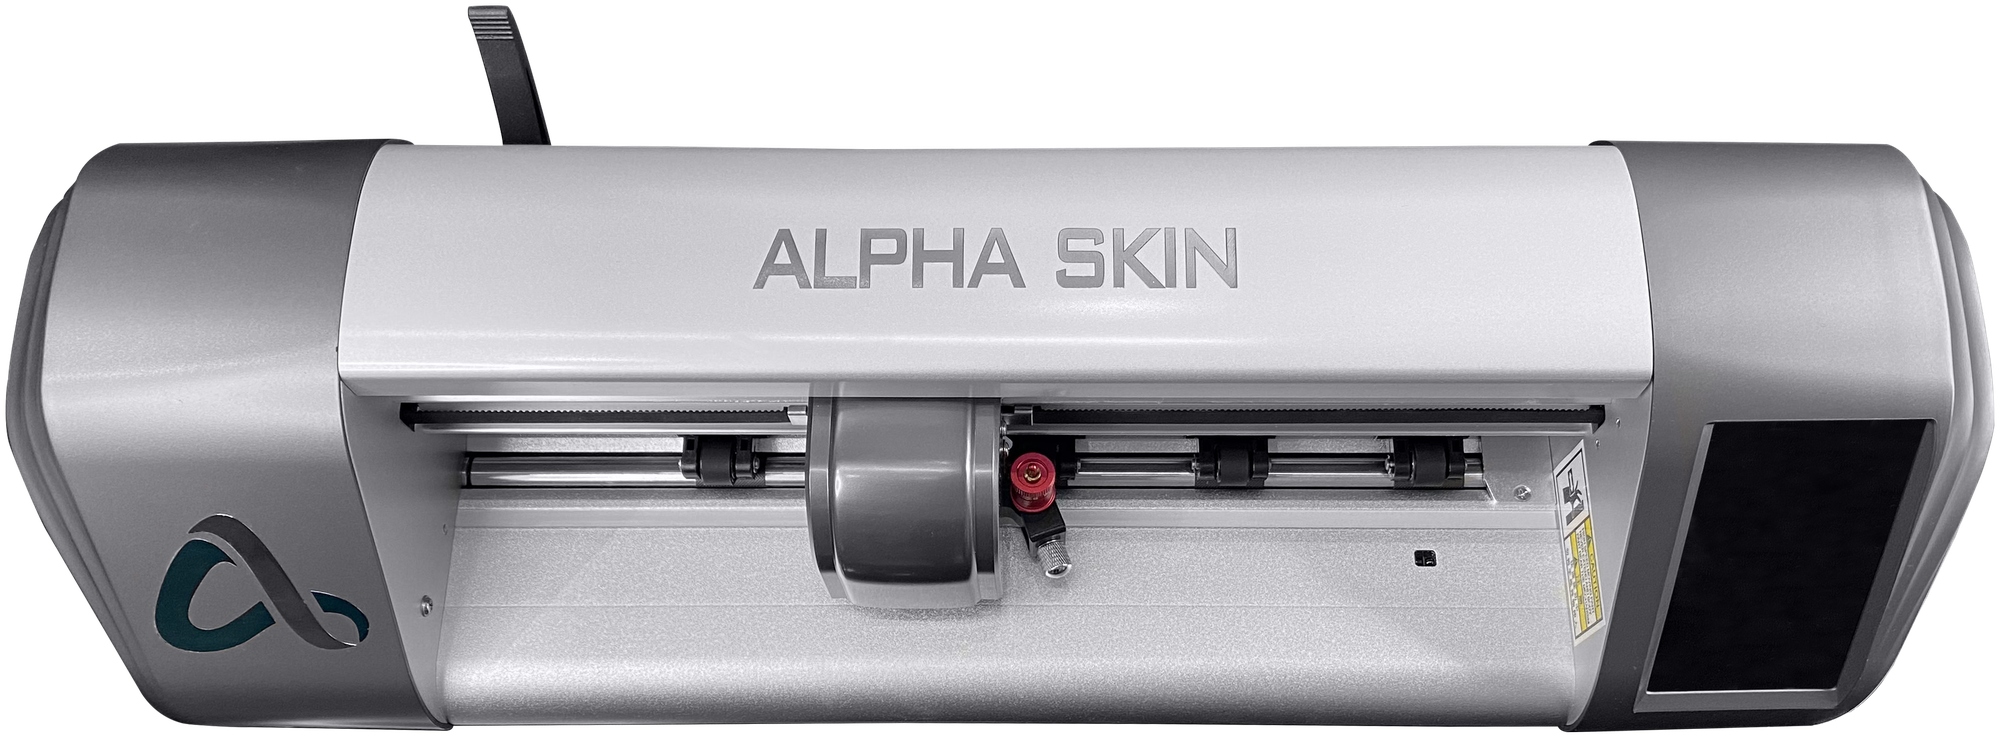 Плоттер AlphaSkin для резки защитных гидрогелевых пленок на телефоны планшетыарт-часы фотоаппараты игровые консоли и другие гаджеты